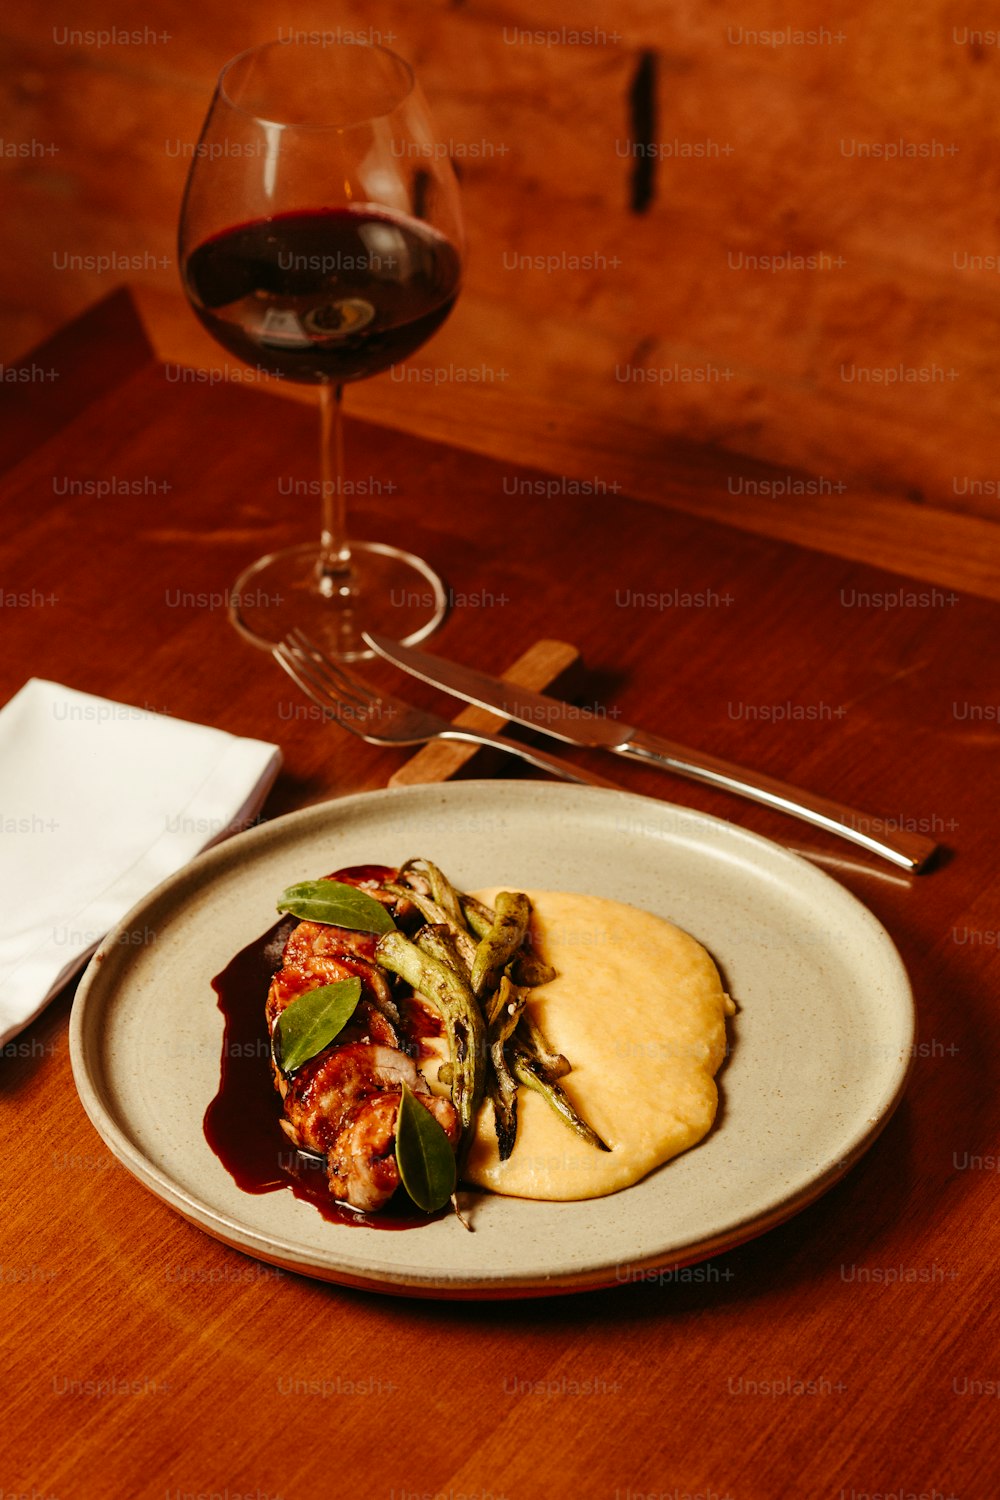 테이블 위에 음식 한 접시와 와인 한 잔